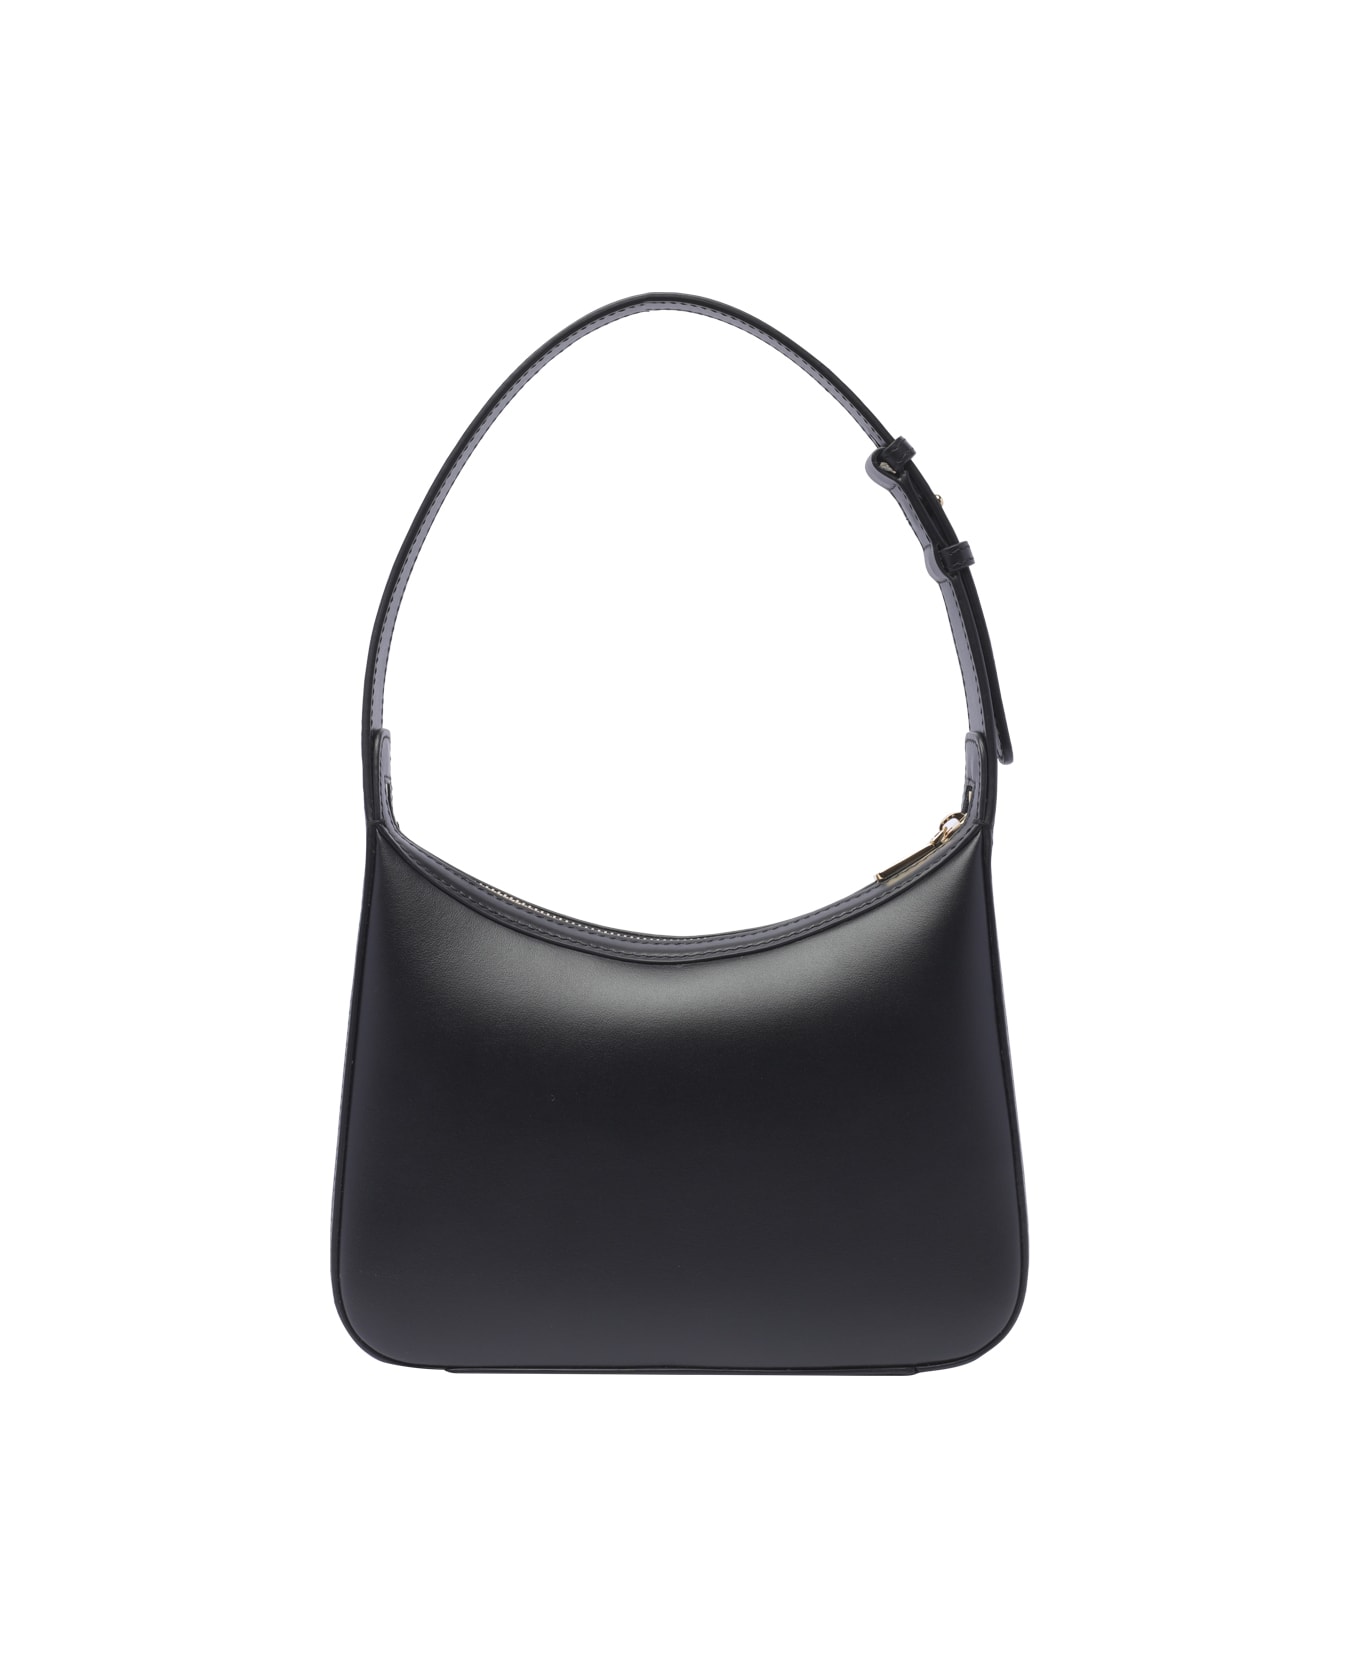 Dolce & Gabbana 3.5 Shoulder Bag - Nero